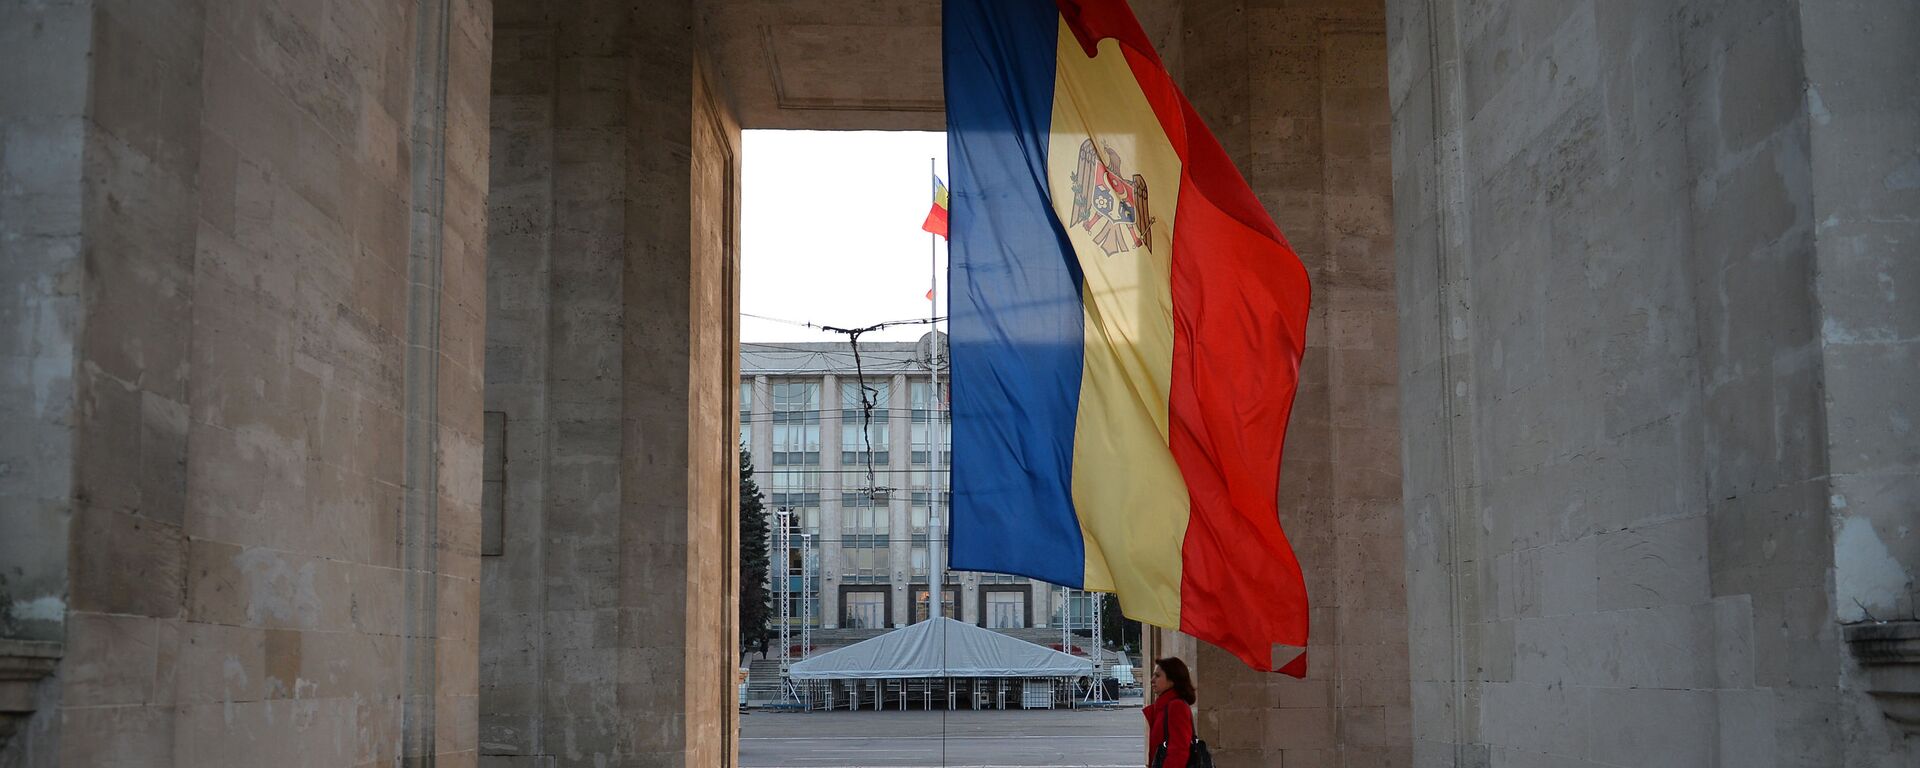 Moldavska zastava ispod Trijumfalne kapije u Kišinjevu - Sputnik Srbija, 1920, 30.11.2020